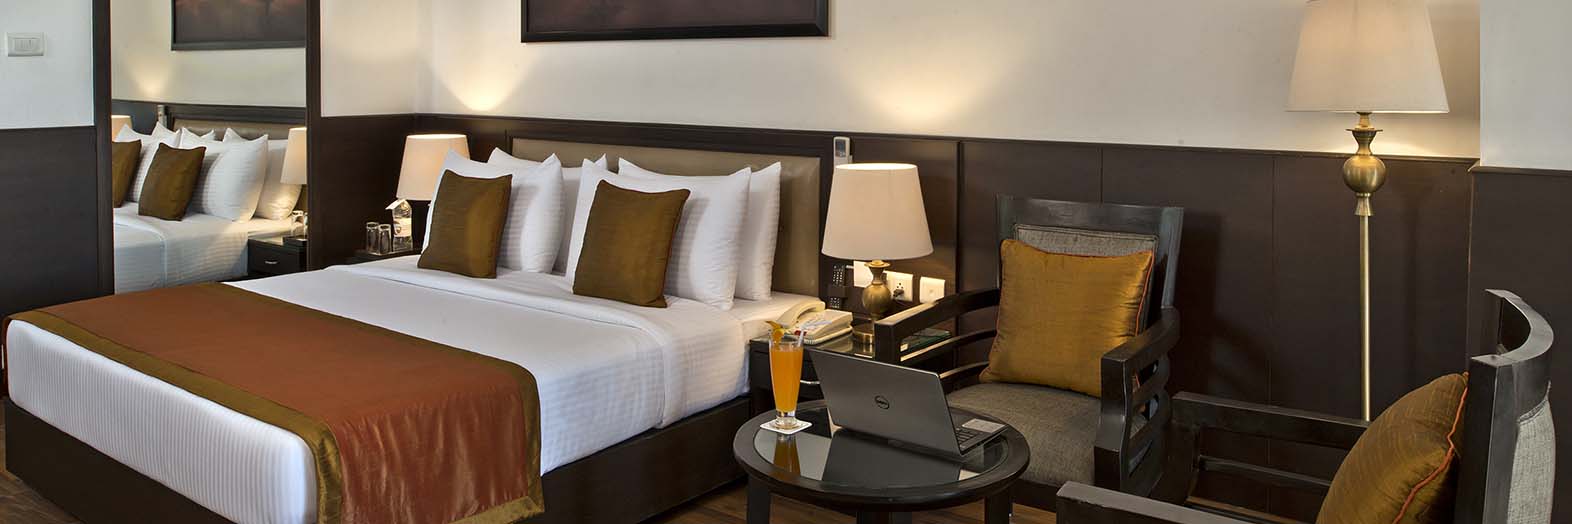 Fortune Park Moksha – Hotels in McLeod Ganj Room